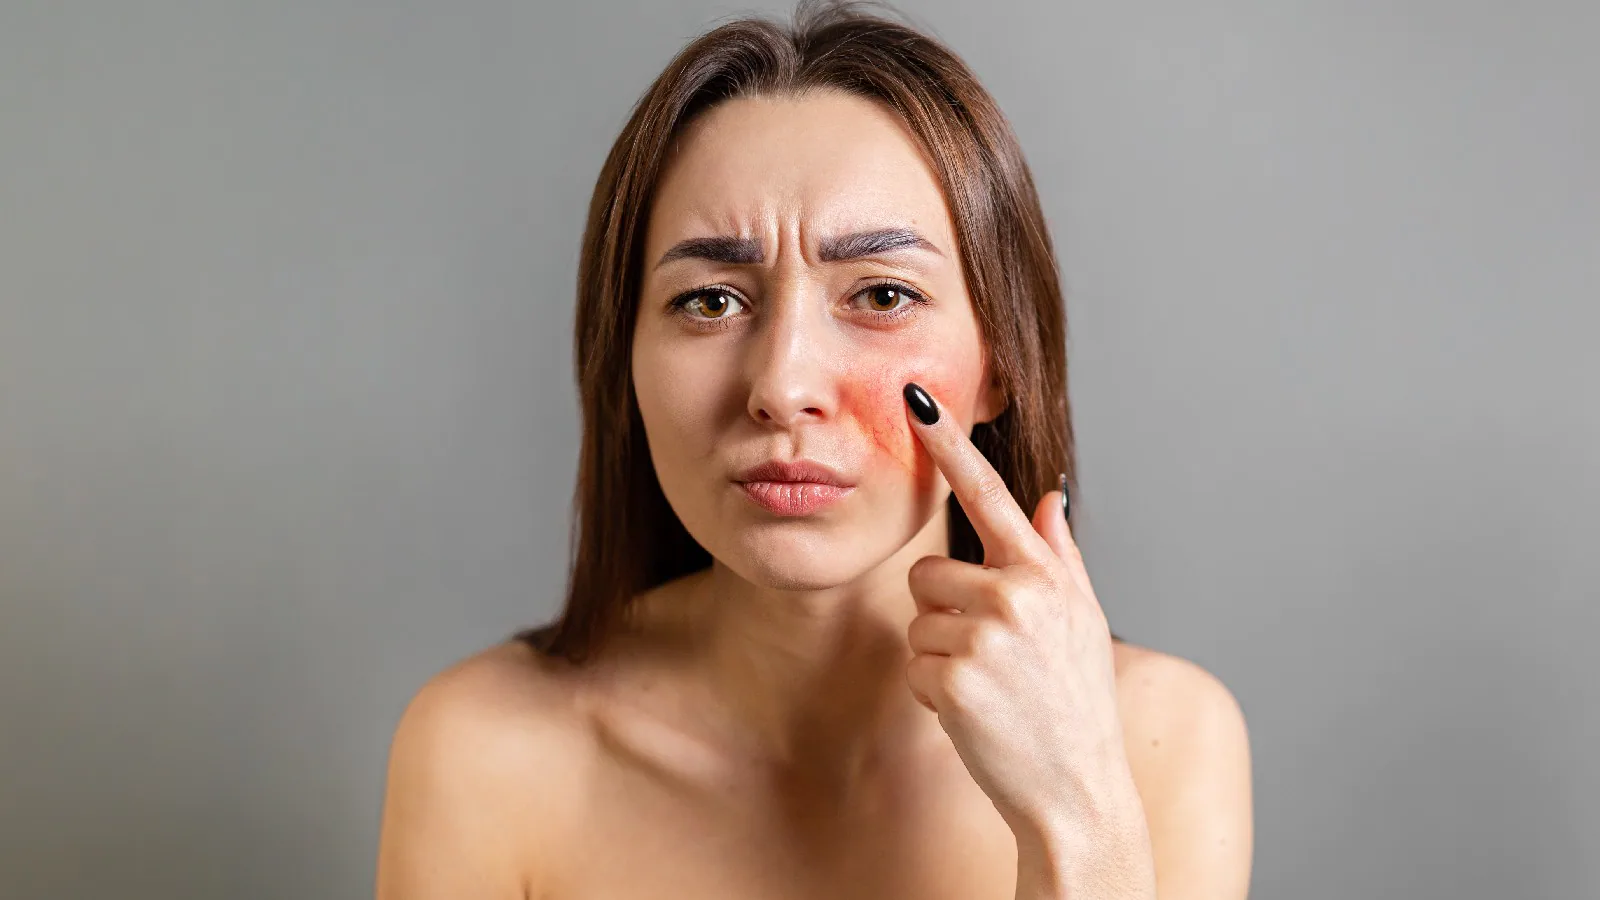 علل و نشانه های ایجاد پوست حساس